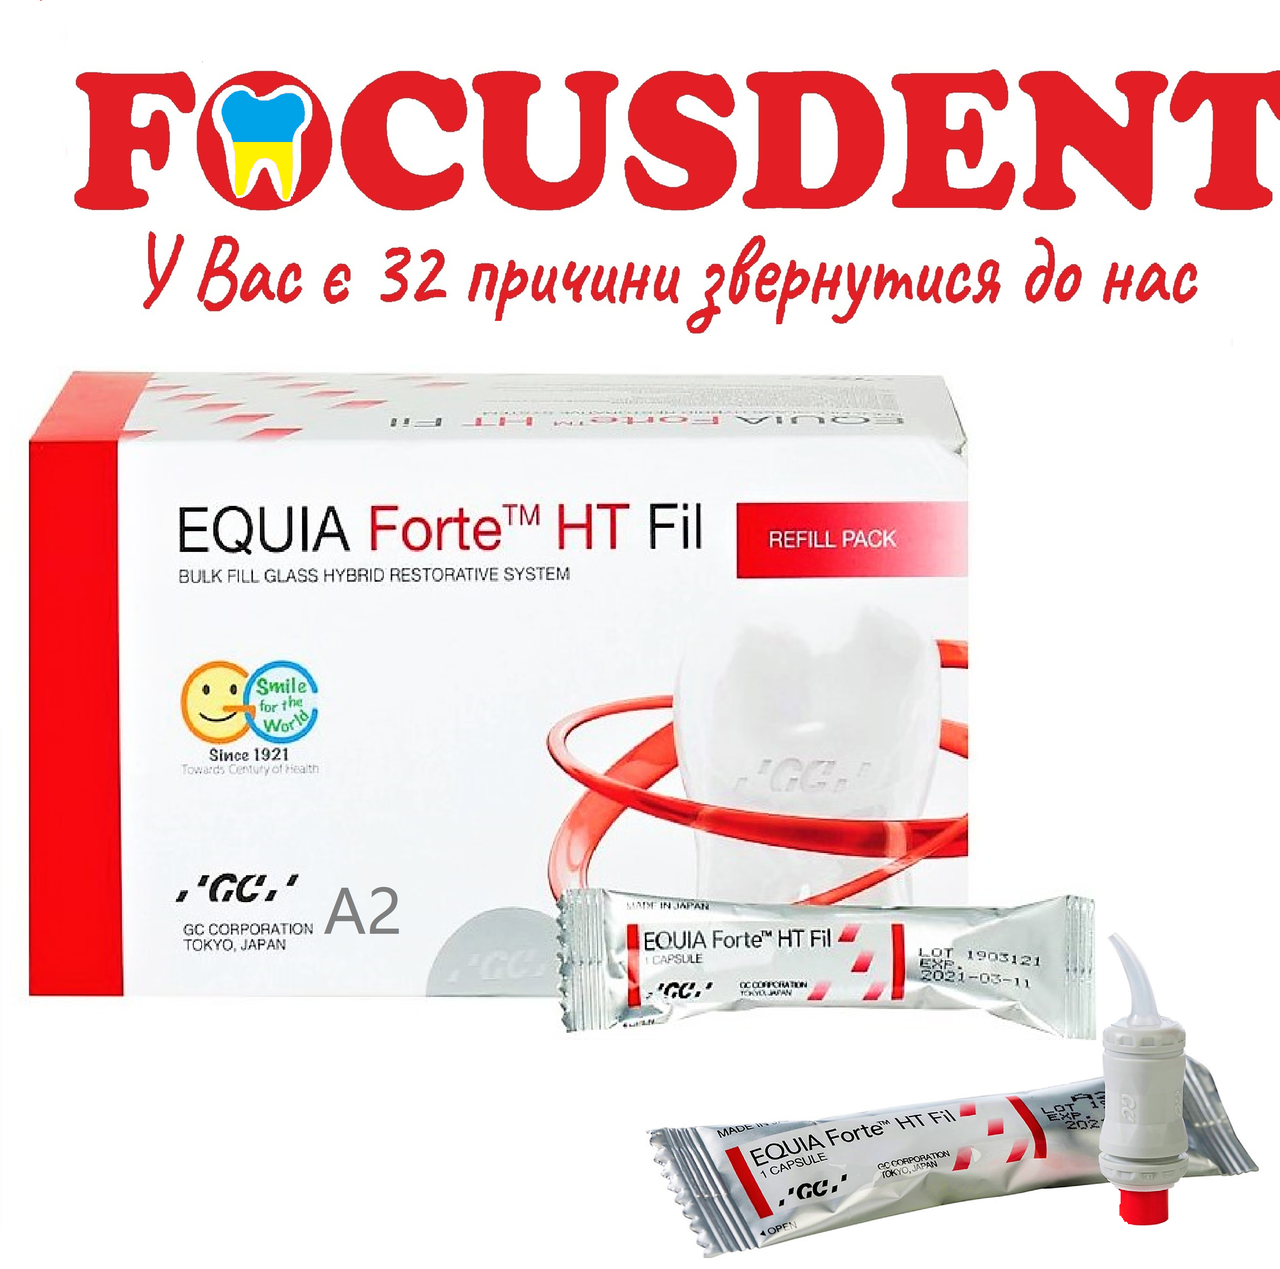 EQUIA Forte™ HT Fil, в капсулах A2